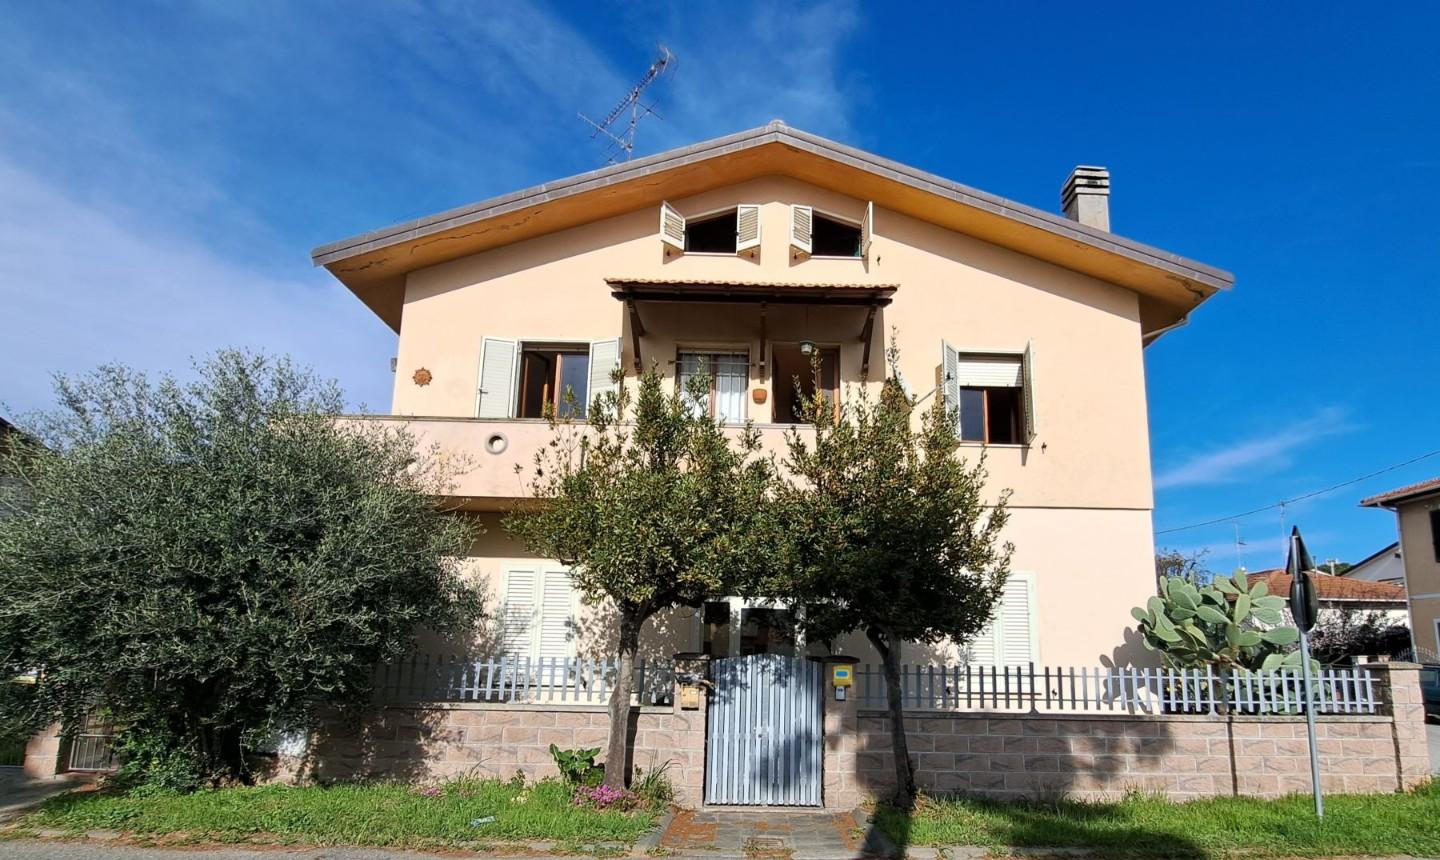 Villa Bifamiliare in vendita a Rosignano Marittimo, 9 locali, prezzo € 245.000 | PortaleAgenzieImmobiliari.it